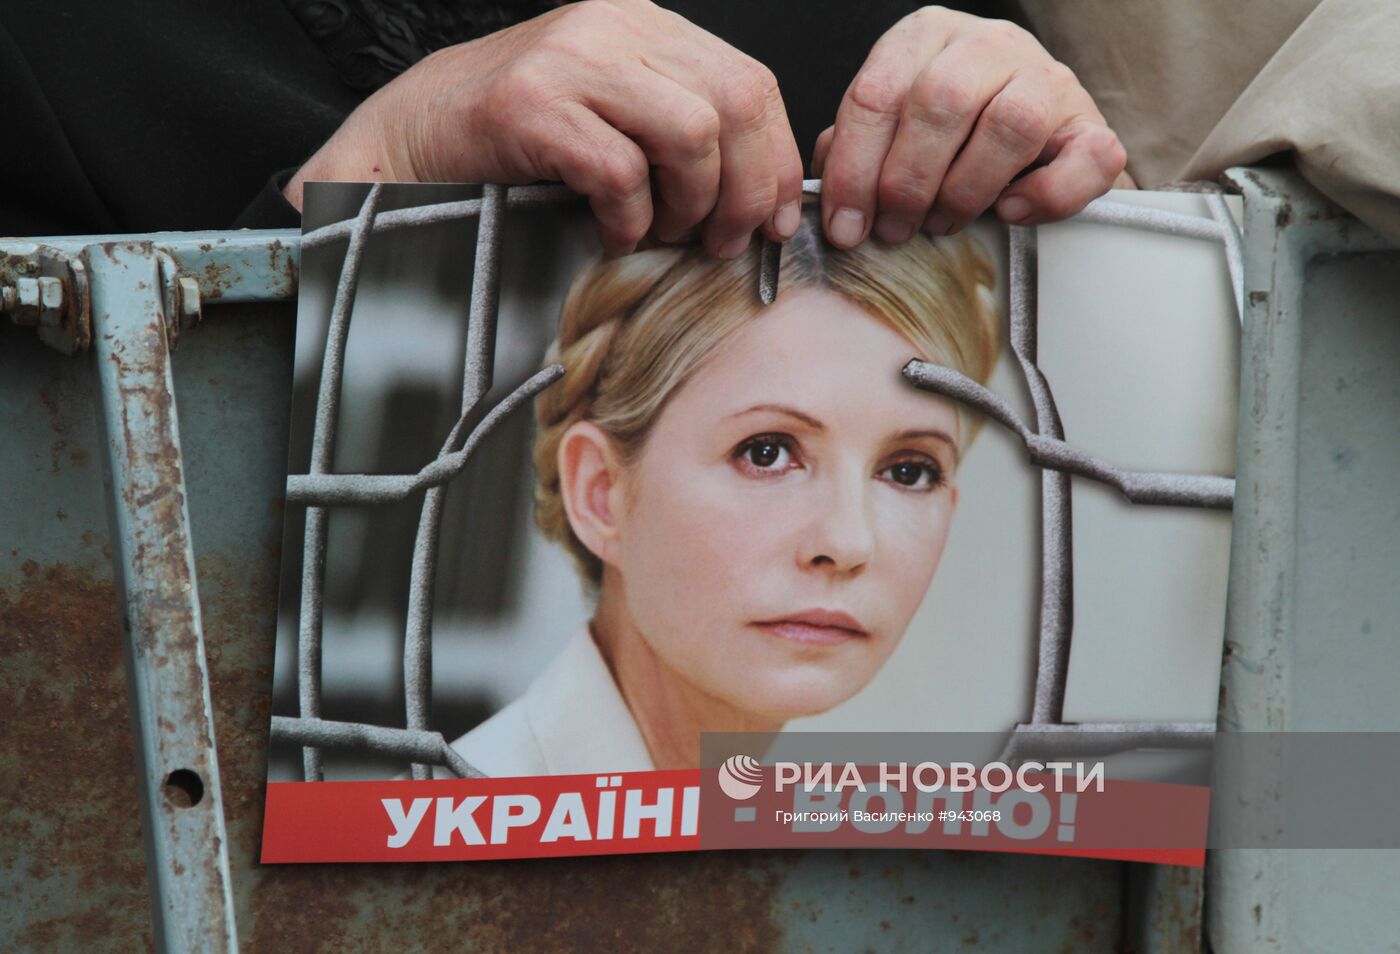 Сторонники Юлии Тимошенко у здания Печерского суда в Киеве